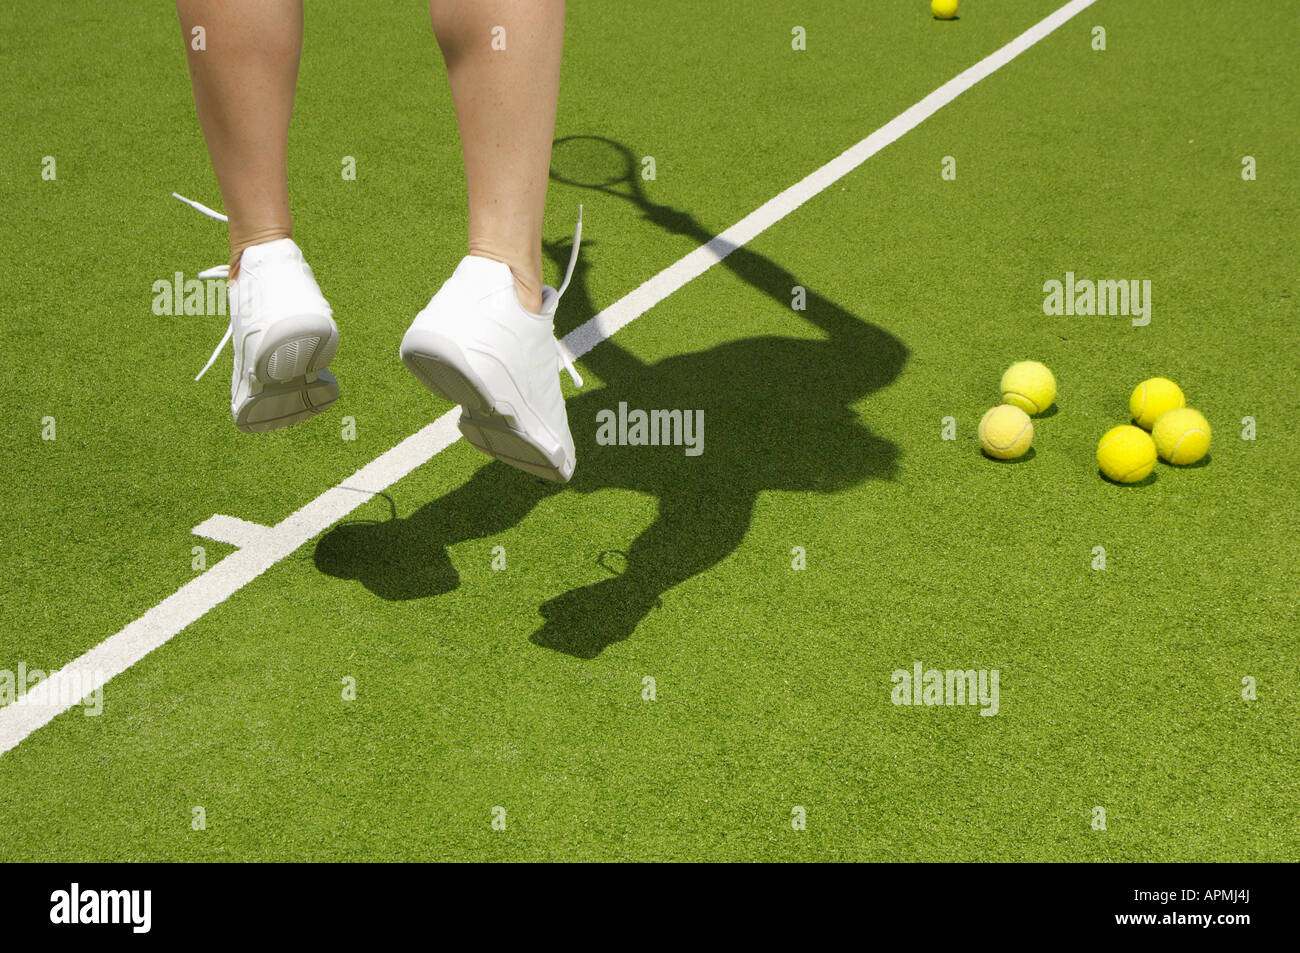 Joueur de tennis balles de tennis près de saut (focus sur pieds) Banque D'Images